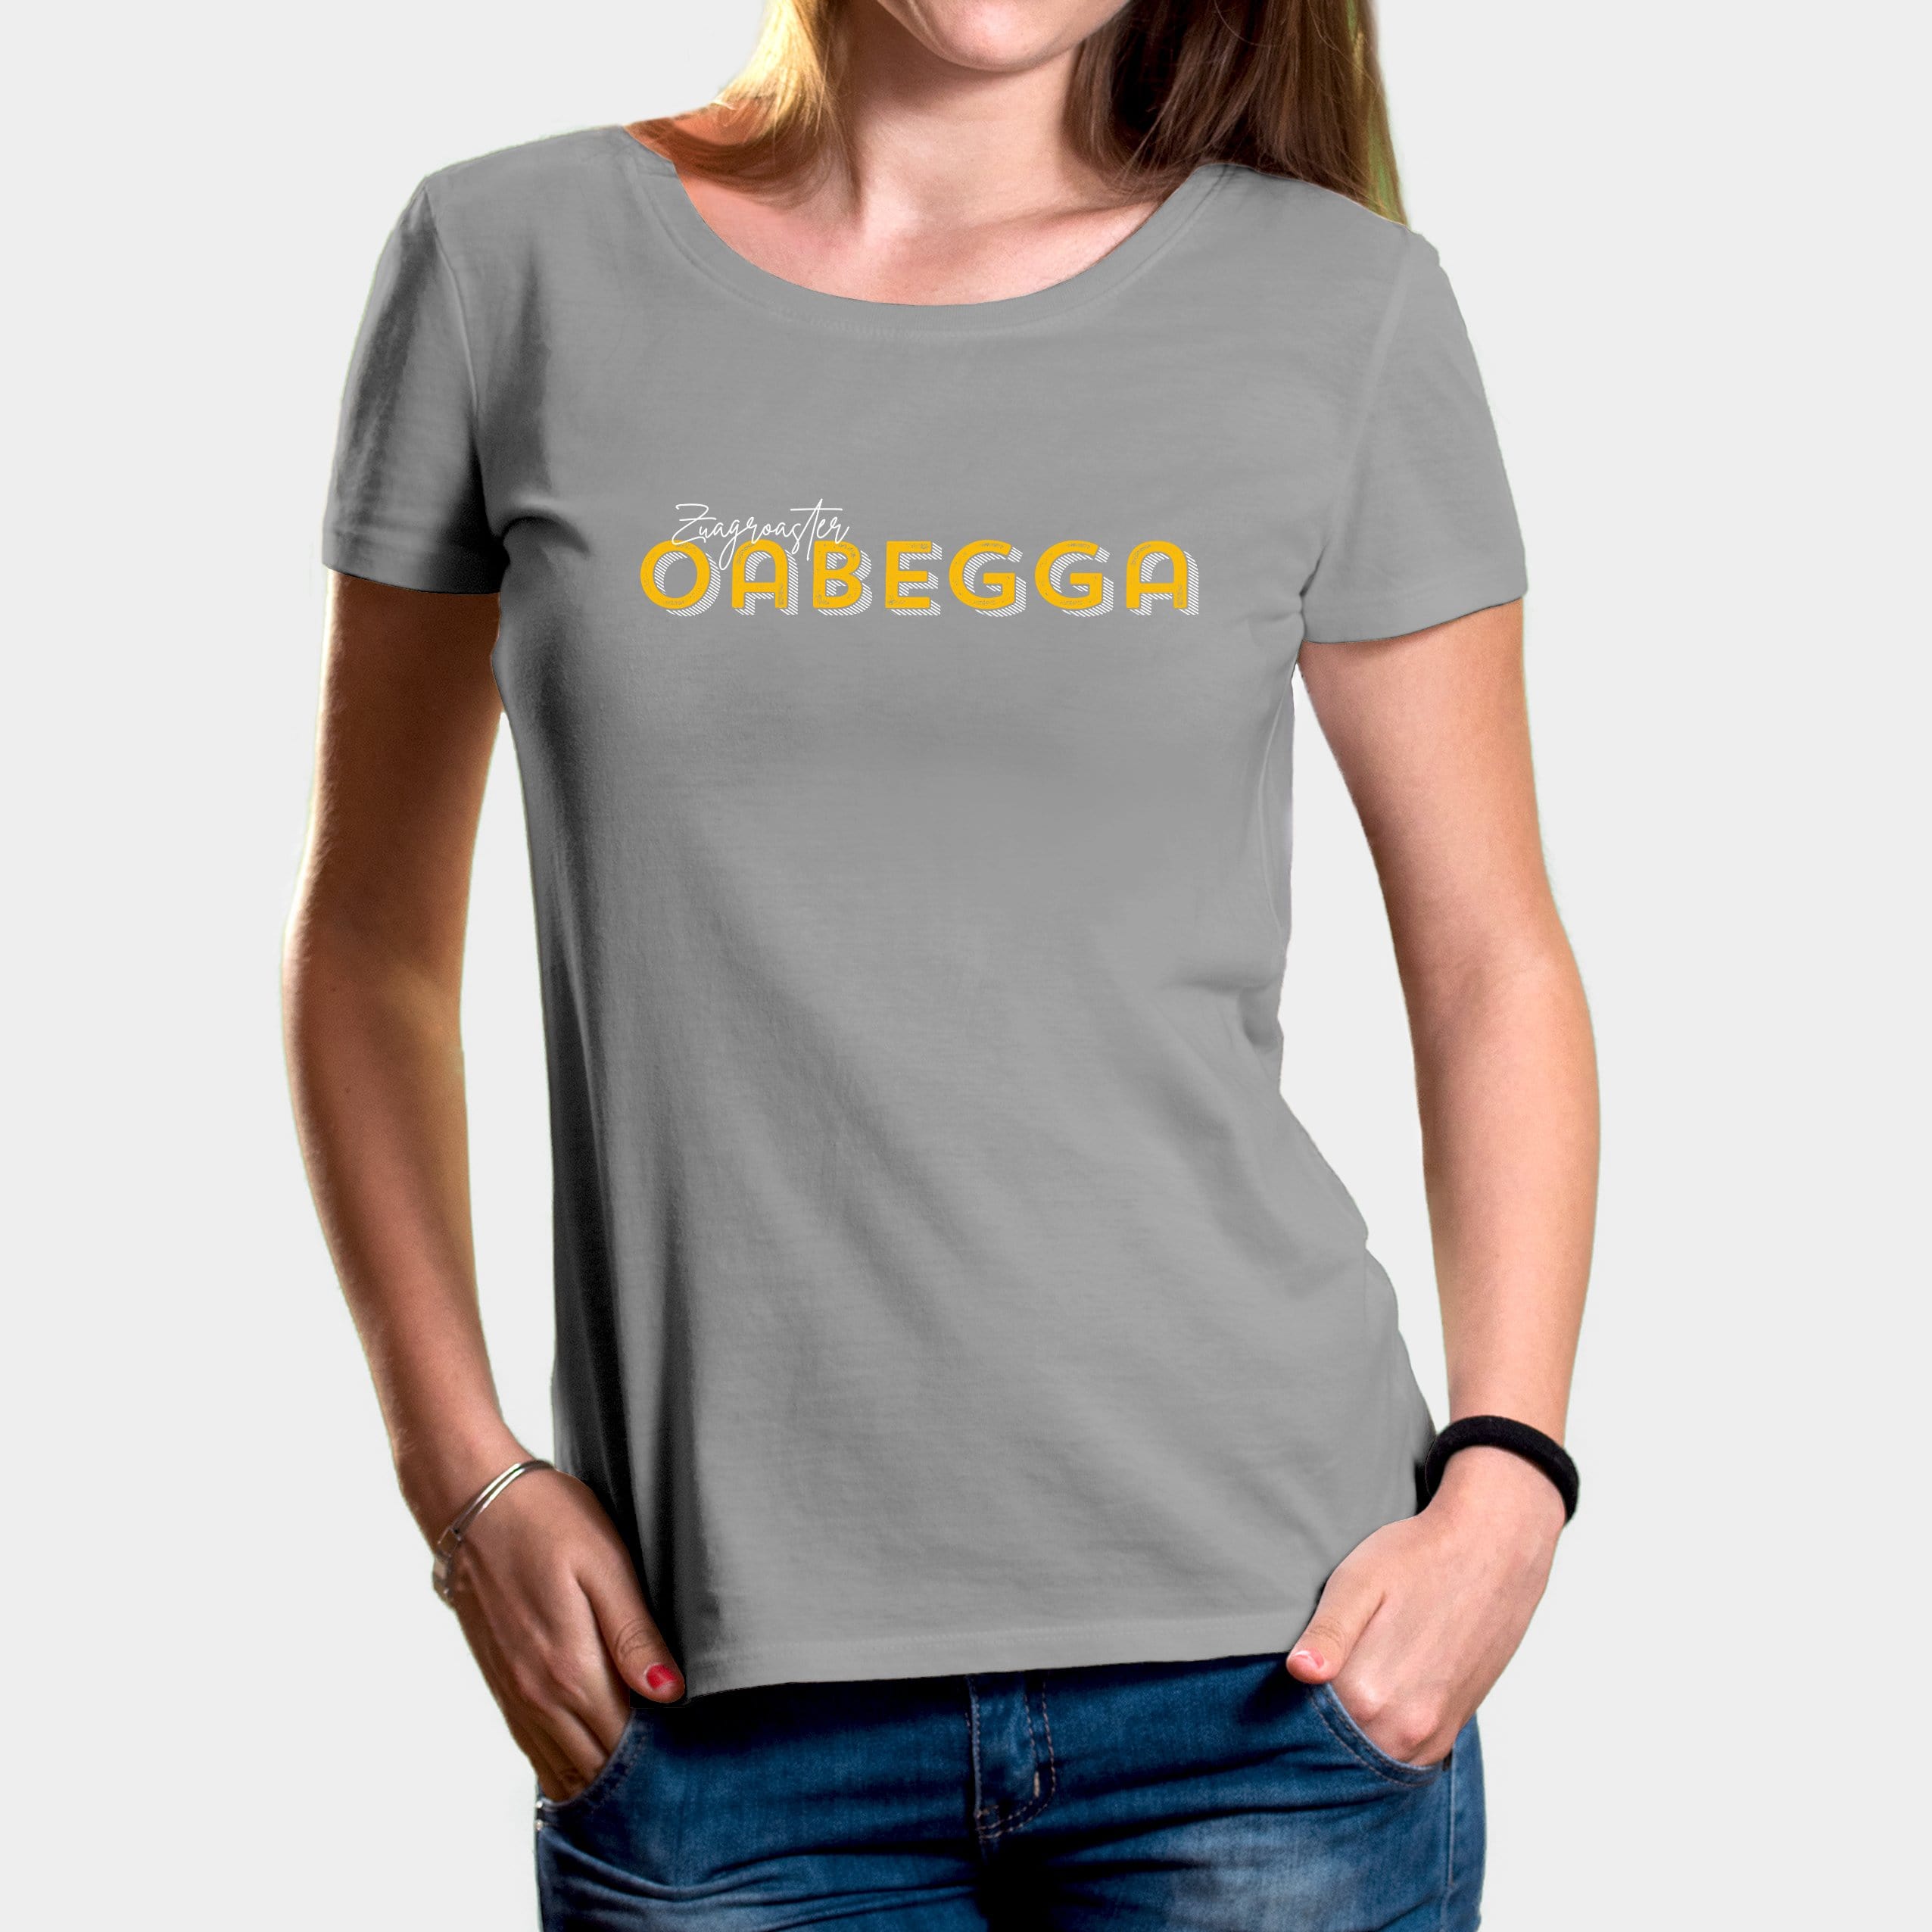 Projekt Damen-T-Shirt "Zuagroaster Oabegga" XS / opal - aus nachhaltiger und fairer Produktion